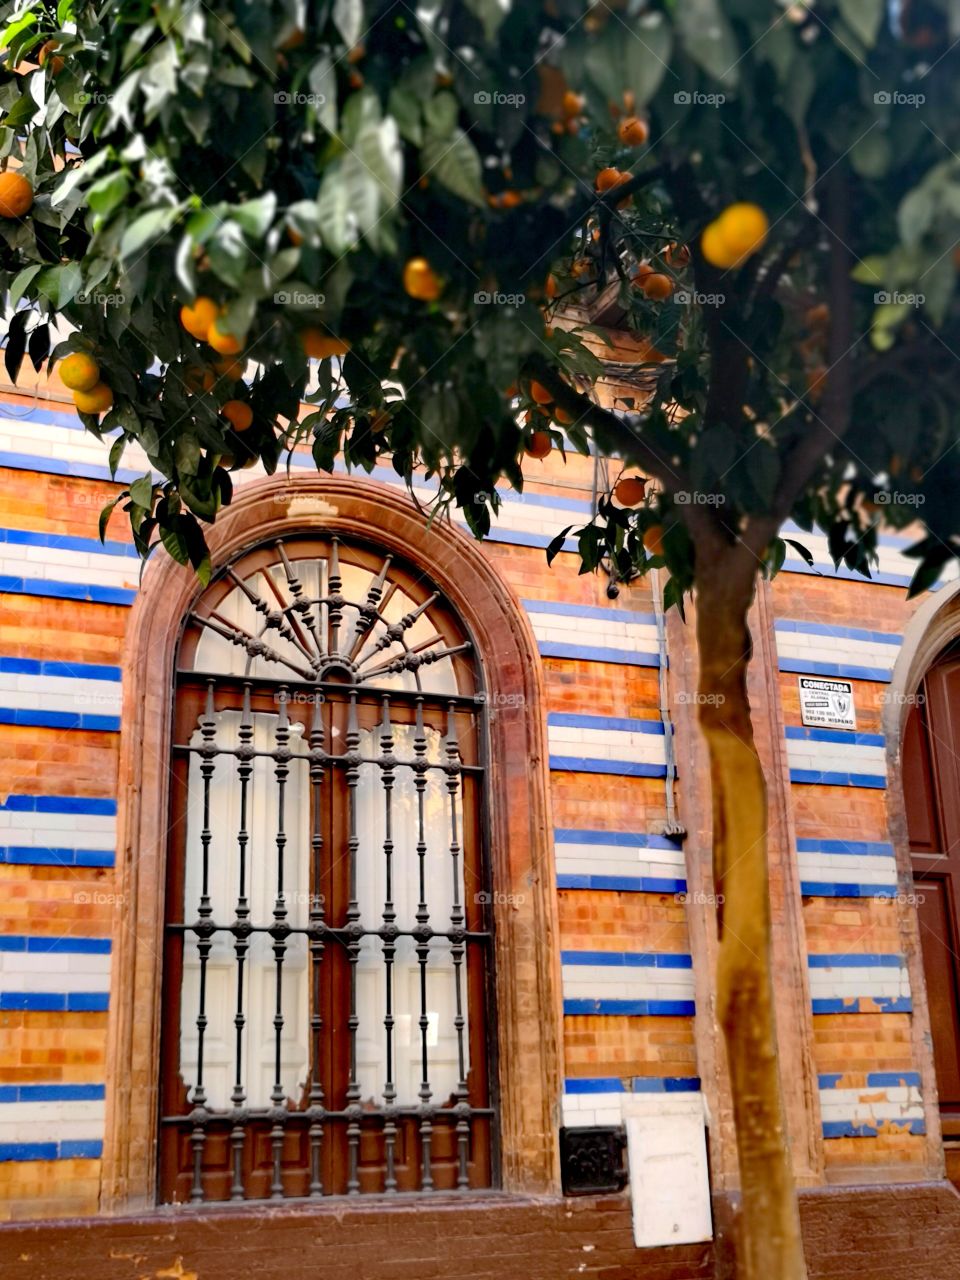 Spanish window and mandarins